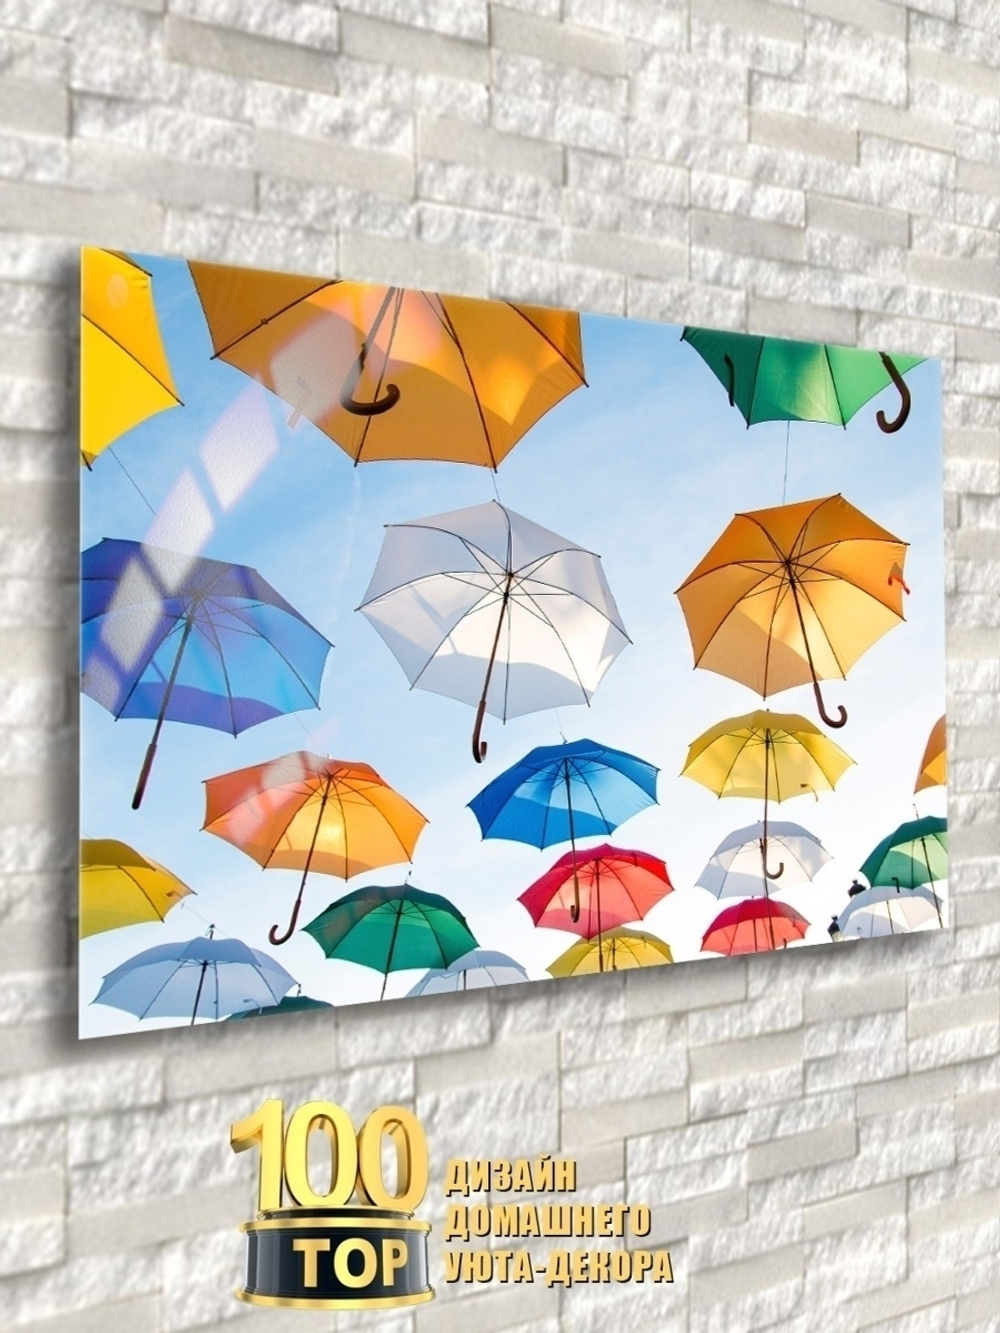 Модульная стеклянная интерьерная картина /Фотокартина на стекле /Цветные зонты, 28x40 см. Декор для дома, подарок